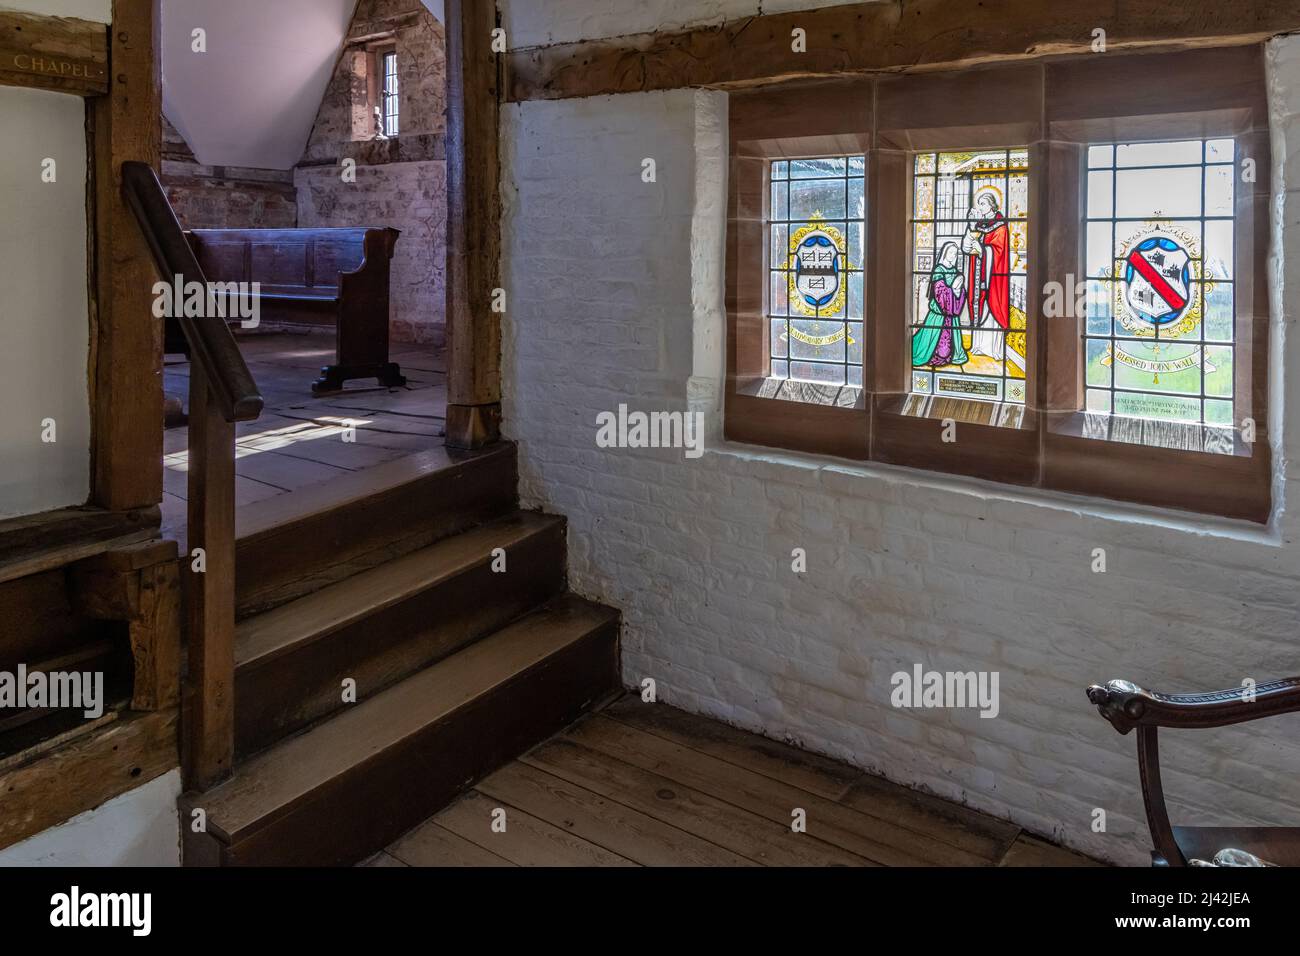 All'interno di Harmington Hall, una casa medievale e elisabettiana del 16th secolo nel Worcestershire, Inghilterra, Regno Unito Foto Stock